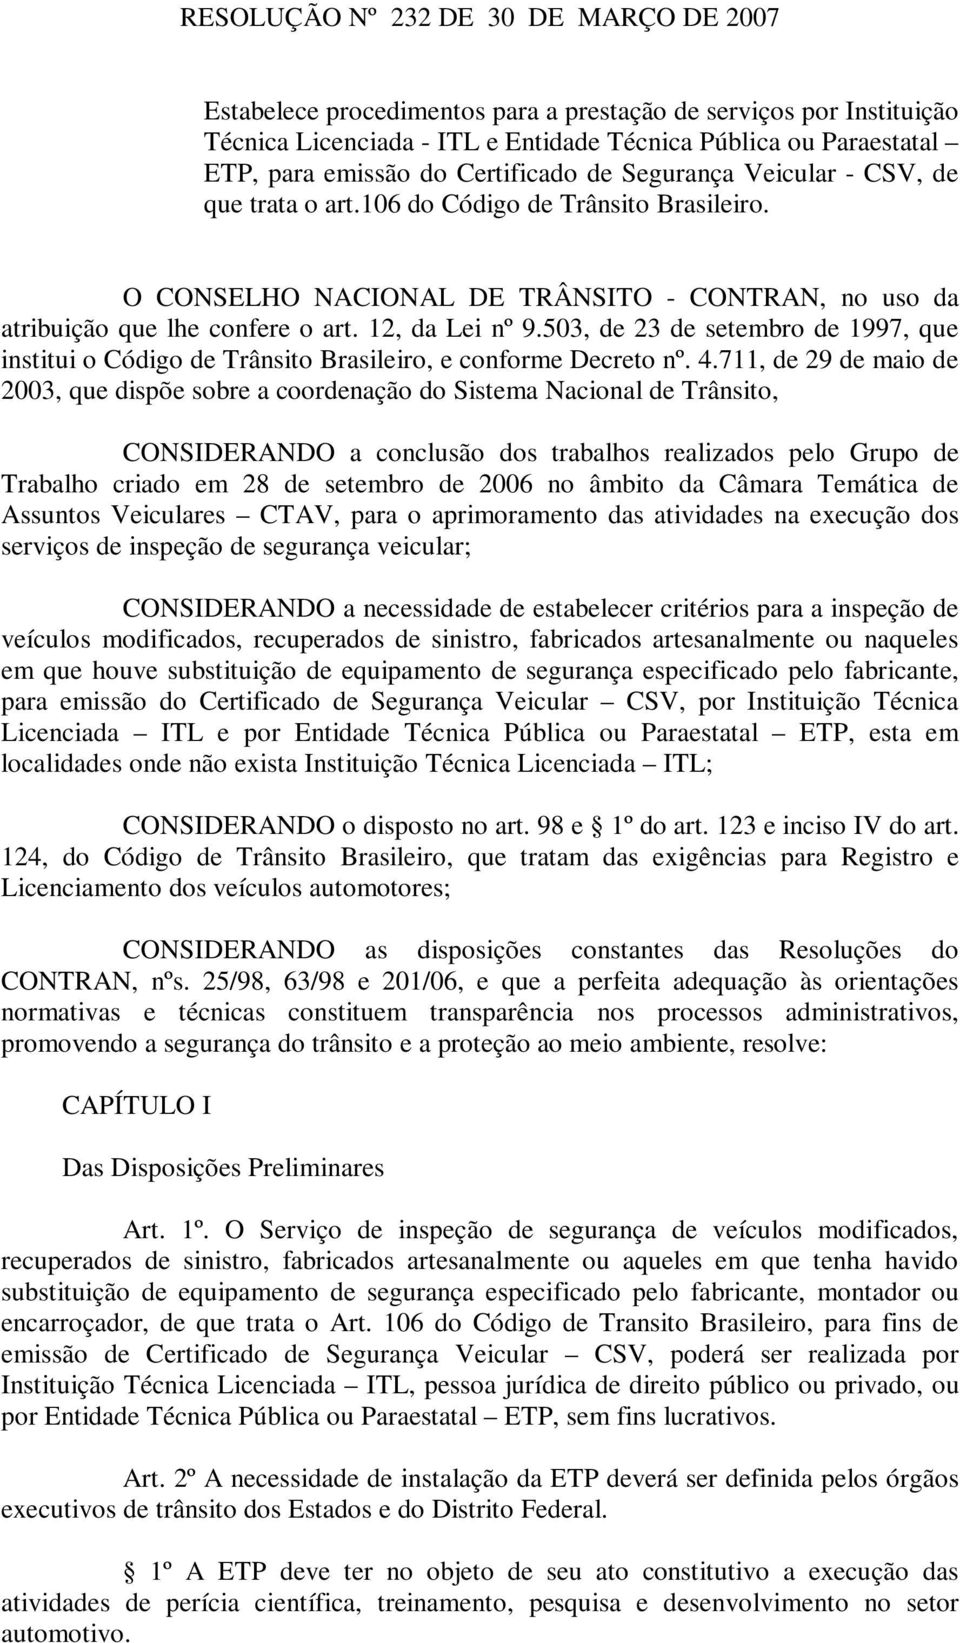 12, da Lei nº 9.503, de 23 de setembro de 1997, que institui o Código de Trânsito Brasileiro, e conforme Decreto nº. 4.